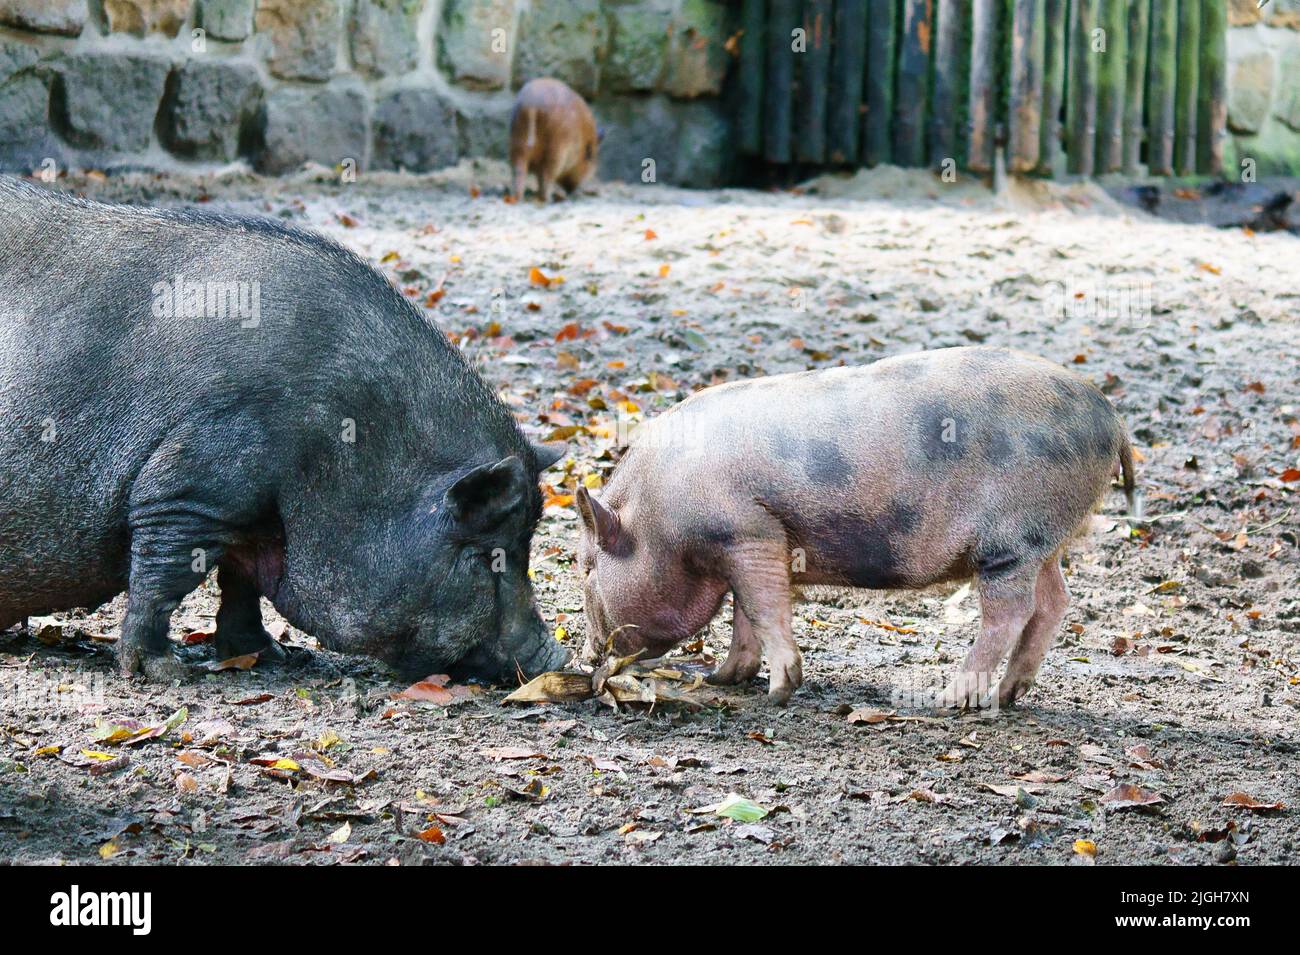 Das Taubbäuchige Ferkel und die Mutter säen, graben im Sand. Hausschwein für die Fleischproduktion. Nutztier, Säugetier. Tierfoto Stockfoto